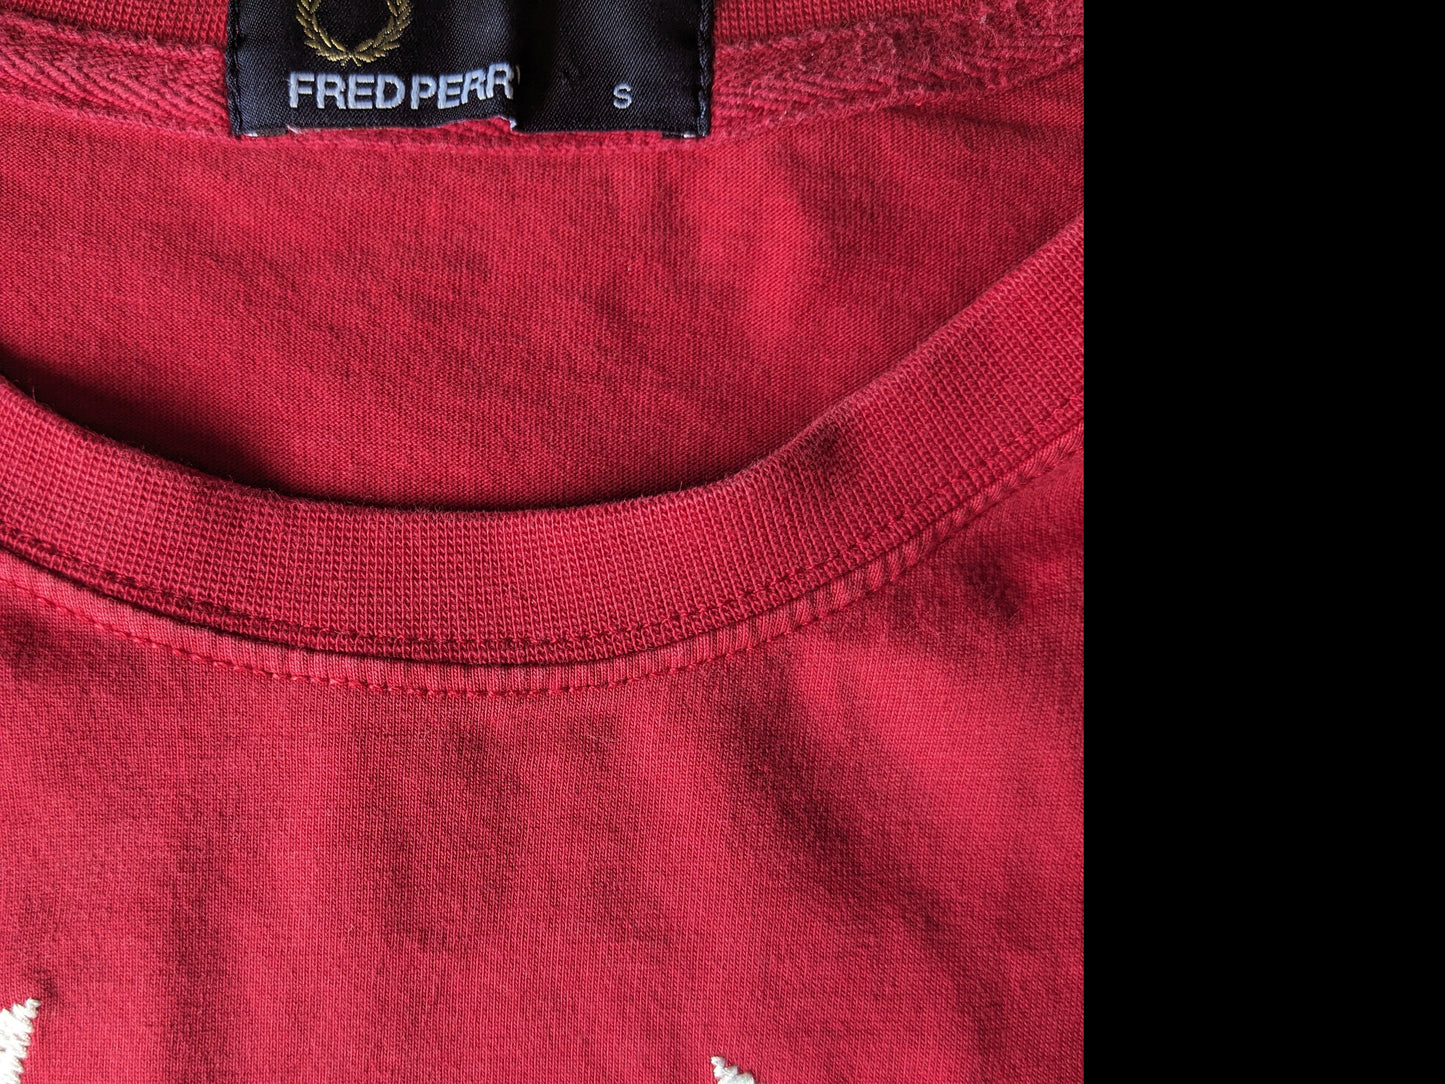 Fred Perry shirt. Rood gekleurd met Witte applicatie. Maat S.